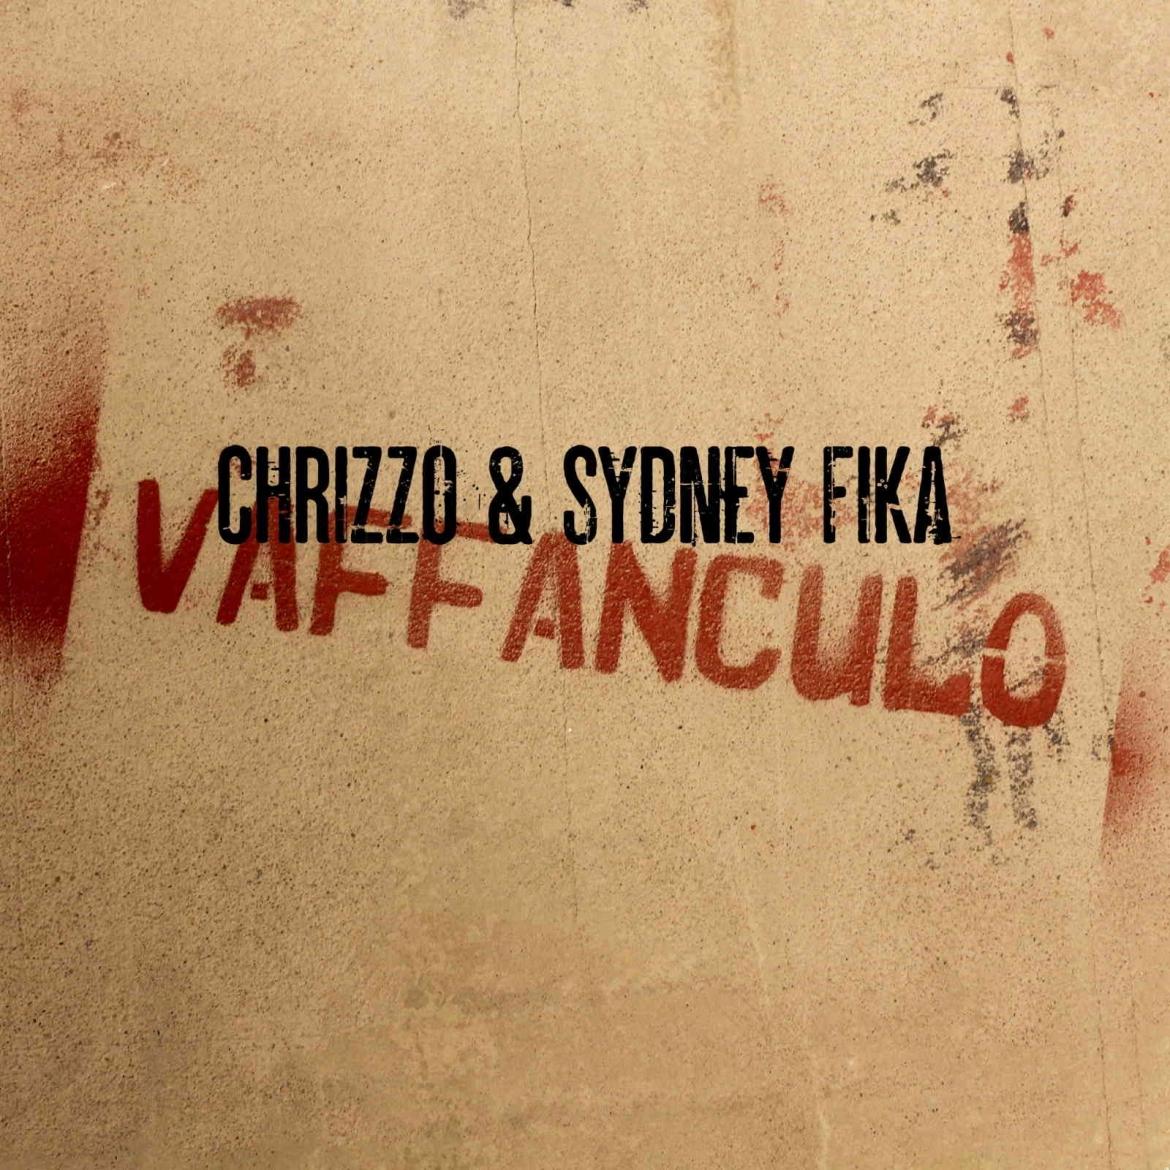 Chrizzo & Sydney Fíka - Vaffanculo